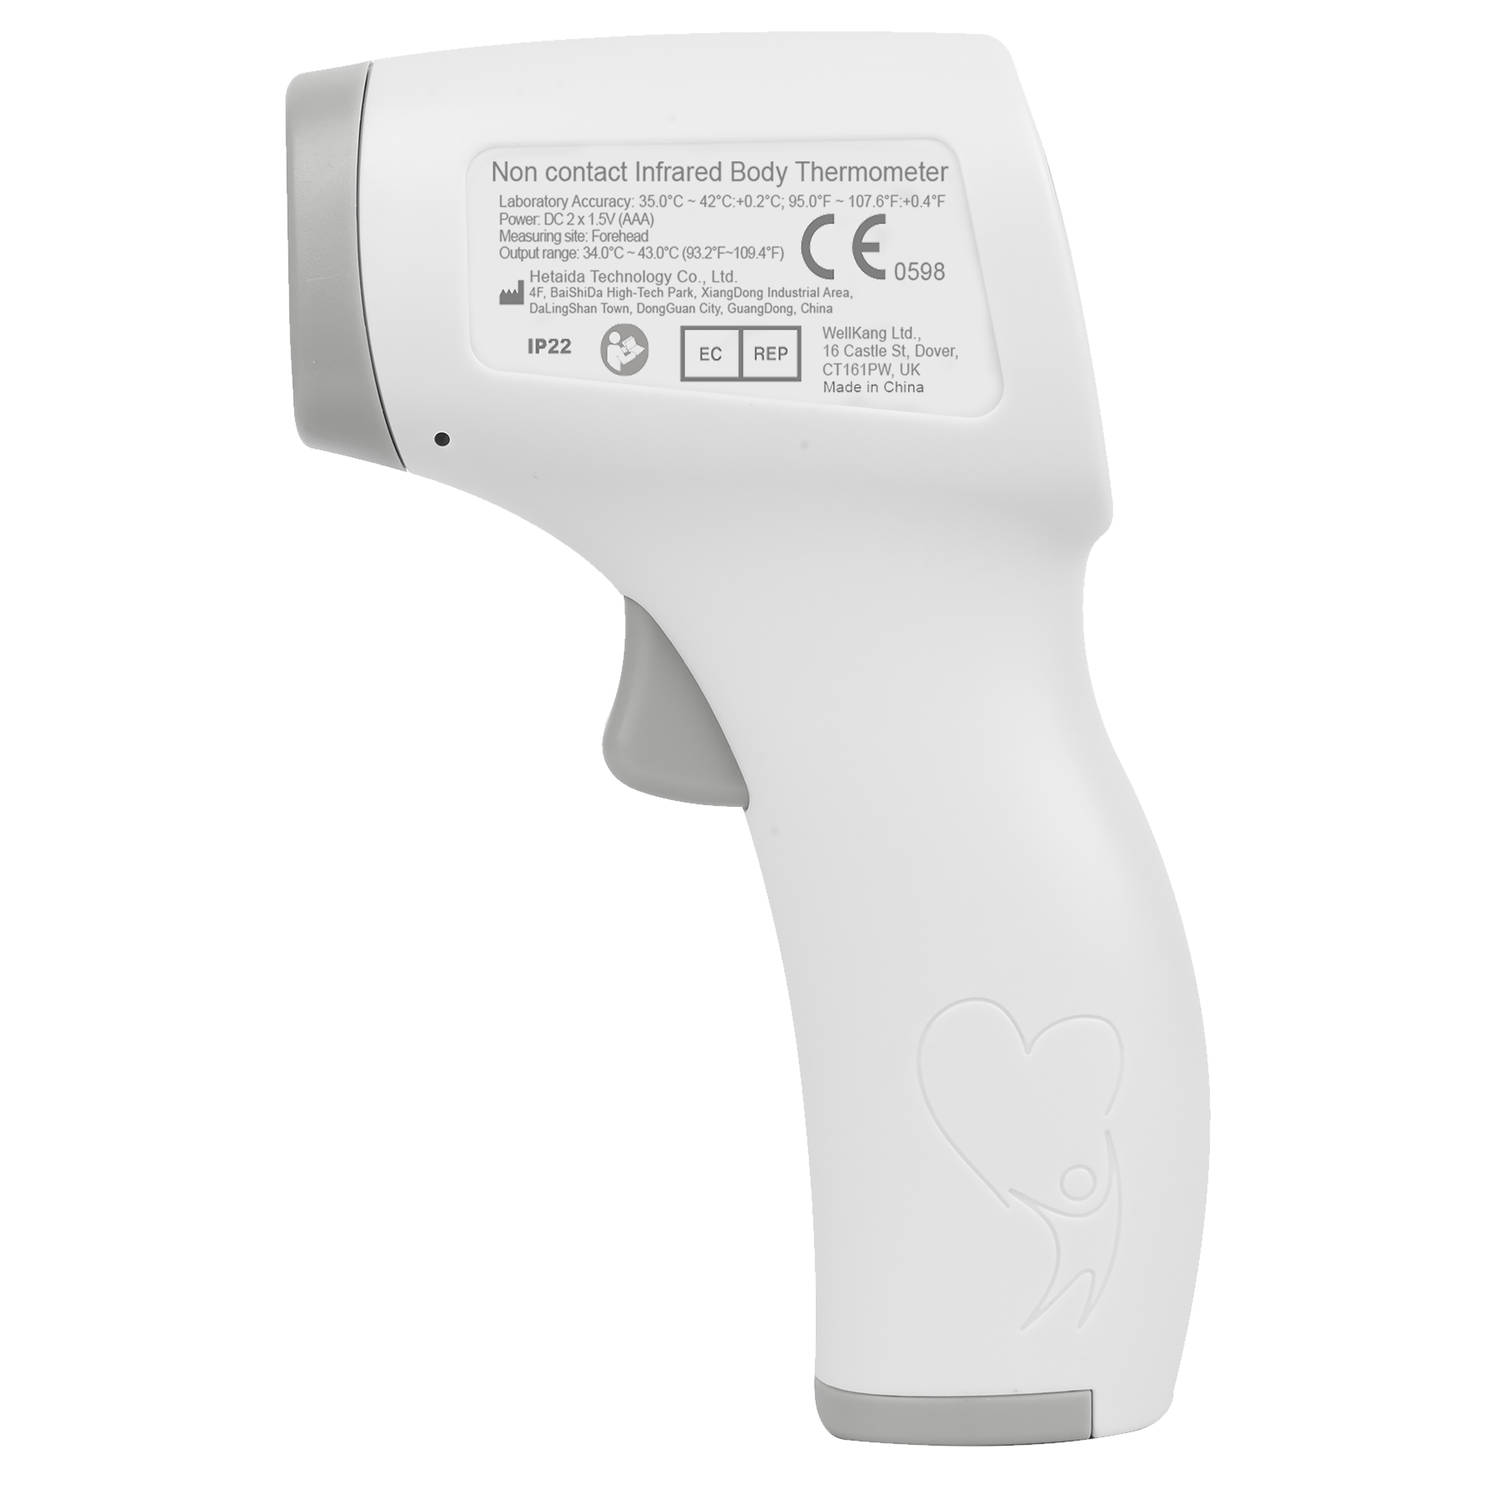 opraken snelheid BES Medisana TM A77 infrarood lichaamsthermometer | Blokker